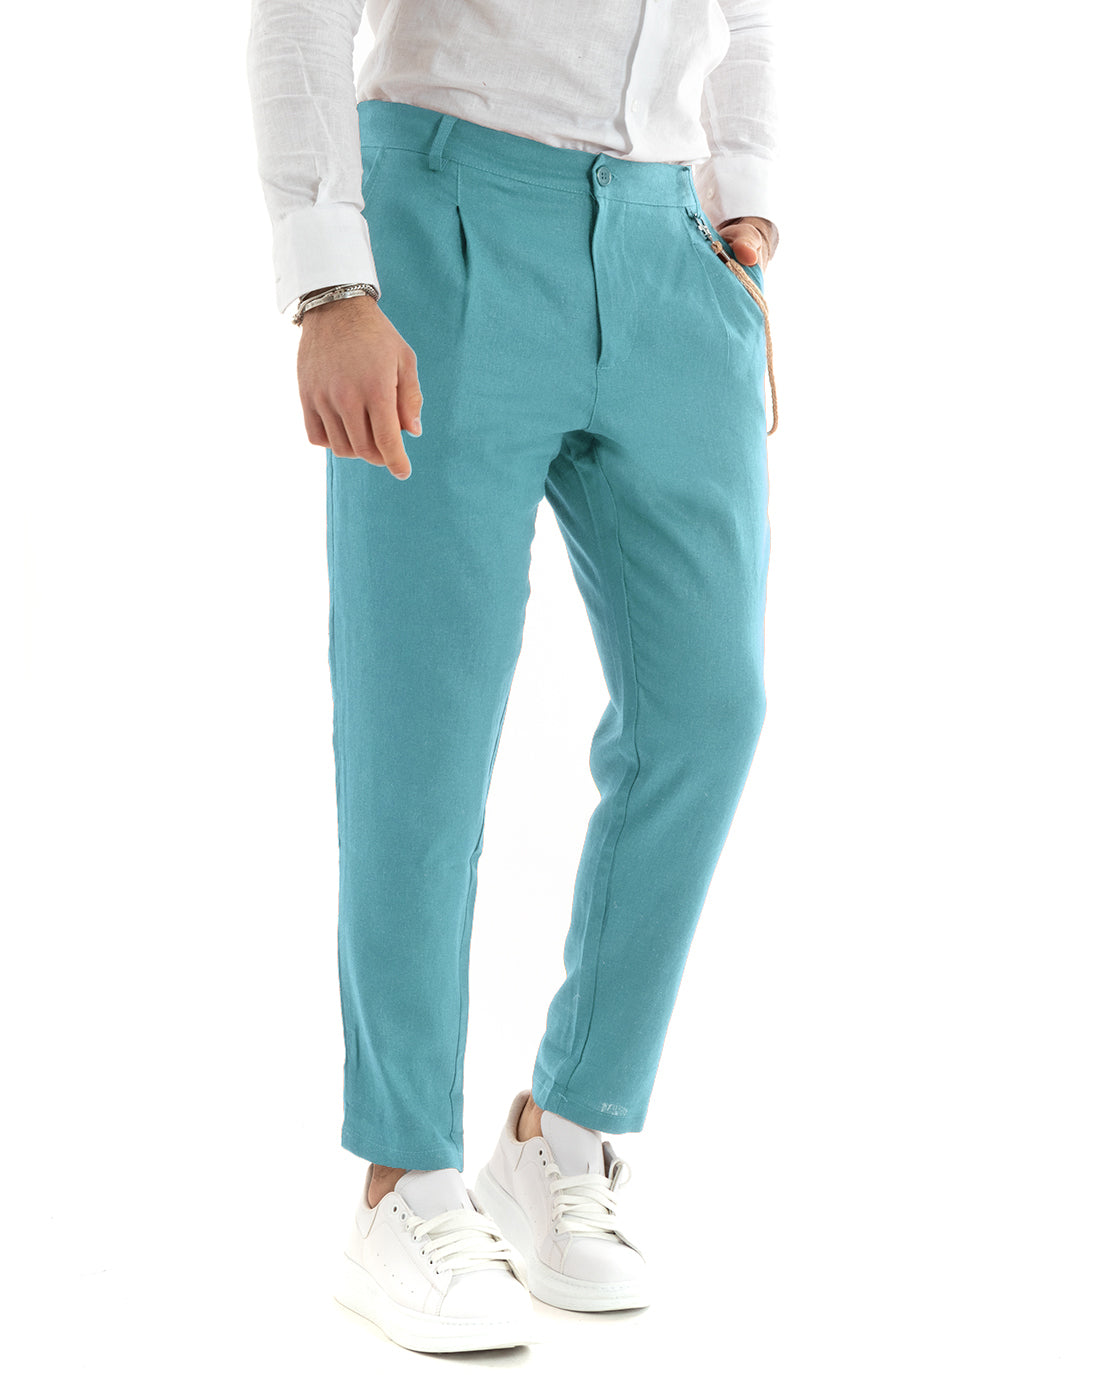 Pantaloni Uomo In Lino Tasca America Classico Sartoriale Comodo Casual Tinta Unita Azzurro GIOSAL-P5803A